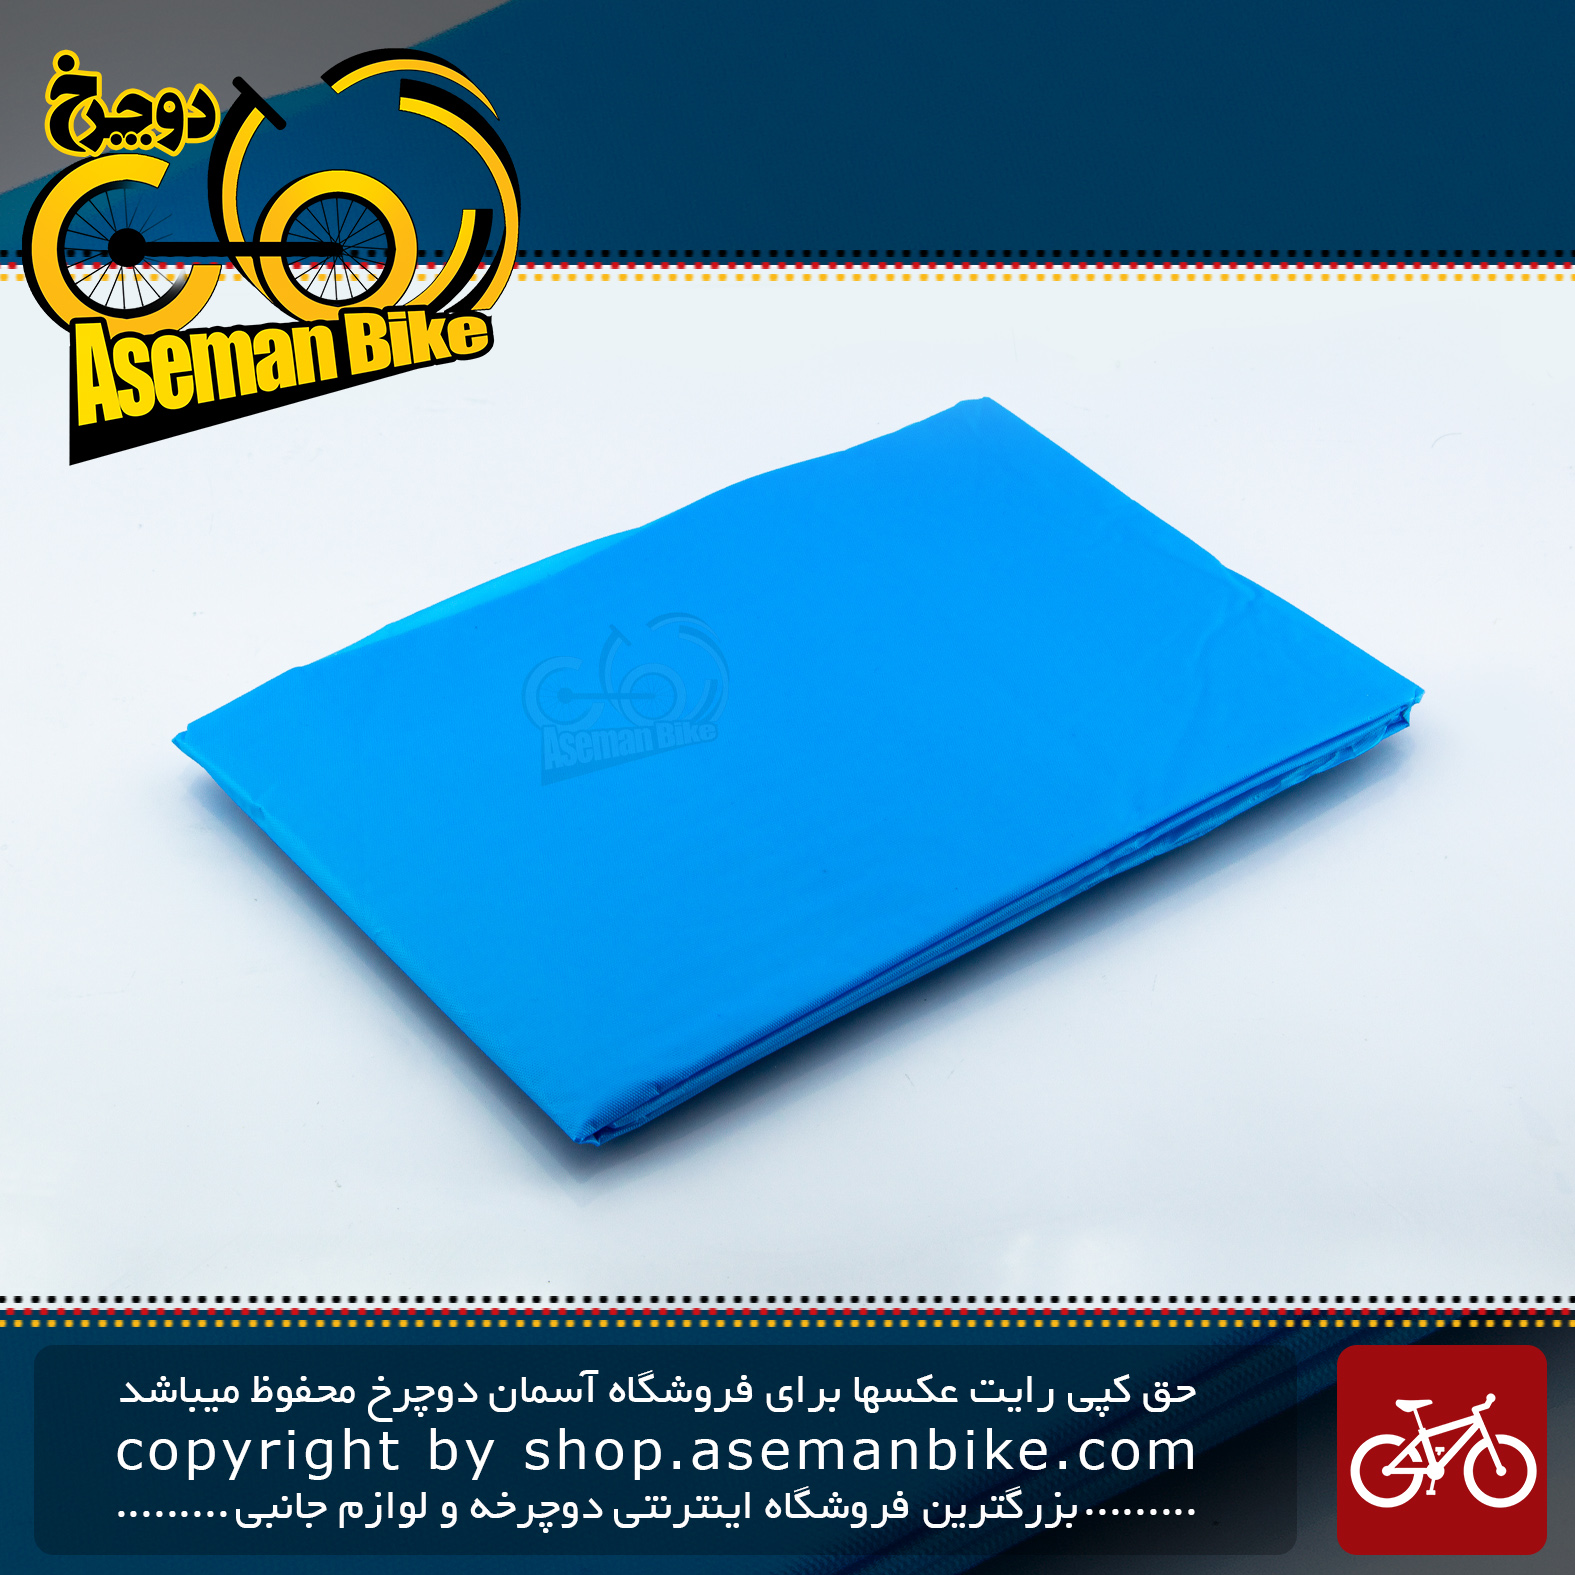 بارانی مخصوص ورزش و دوچرخه سواری پانچو سبک وزن مدل آندرکاور 011 آبی Poncho Cycling Sport Wear Light Weight Under-cover Blue 011